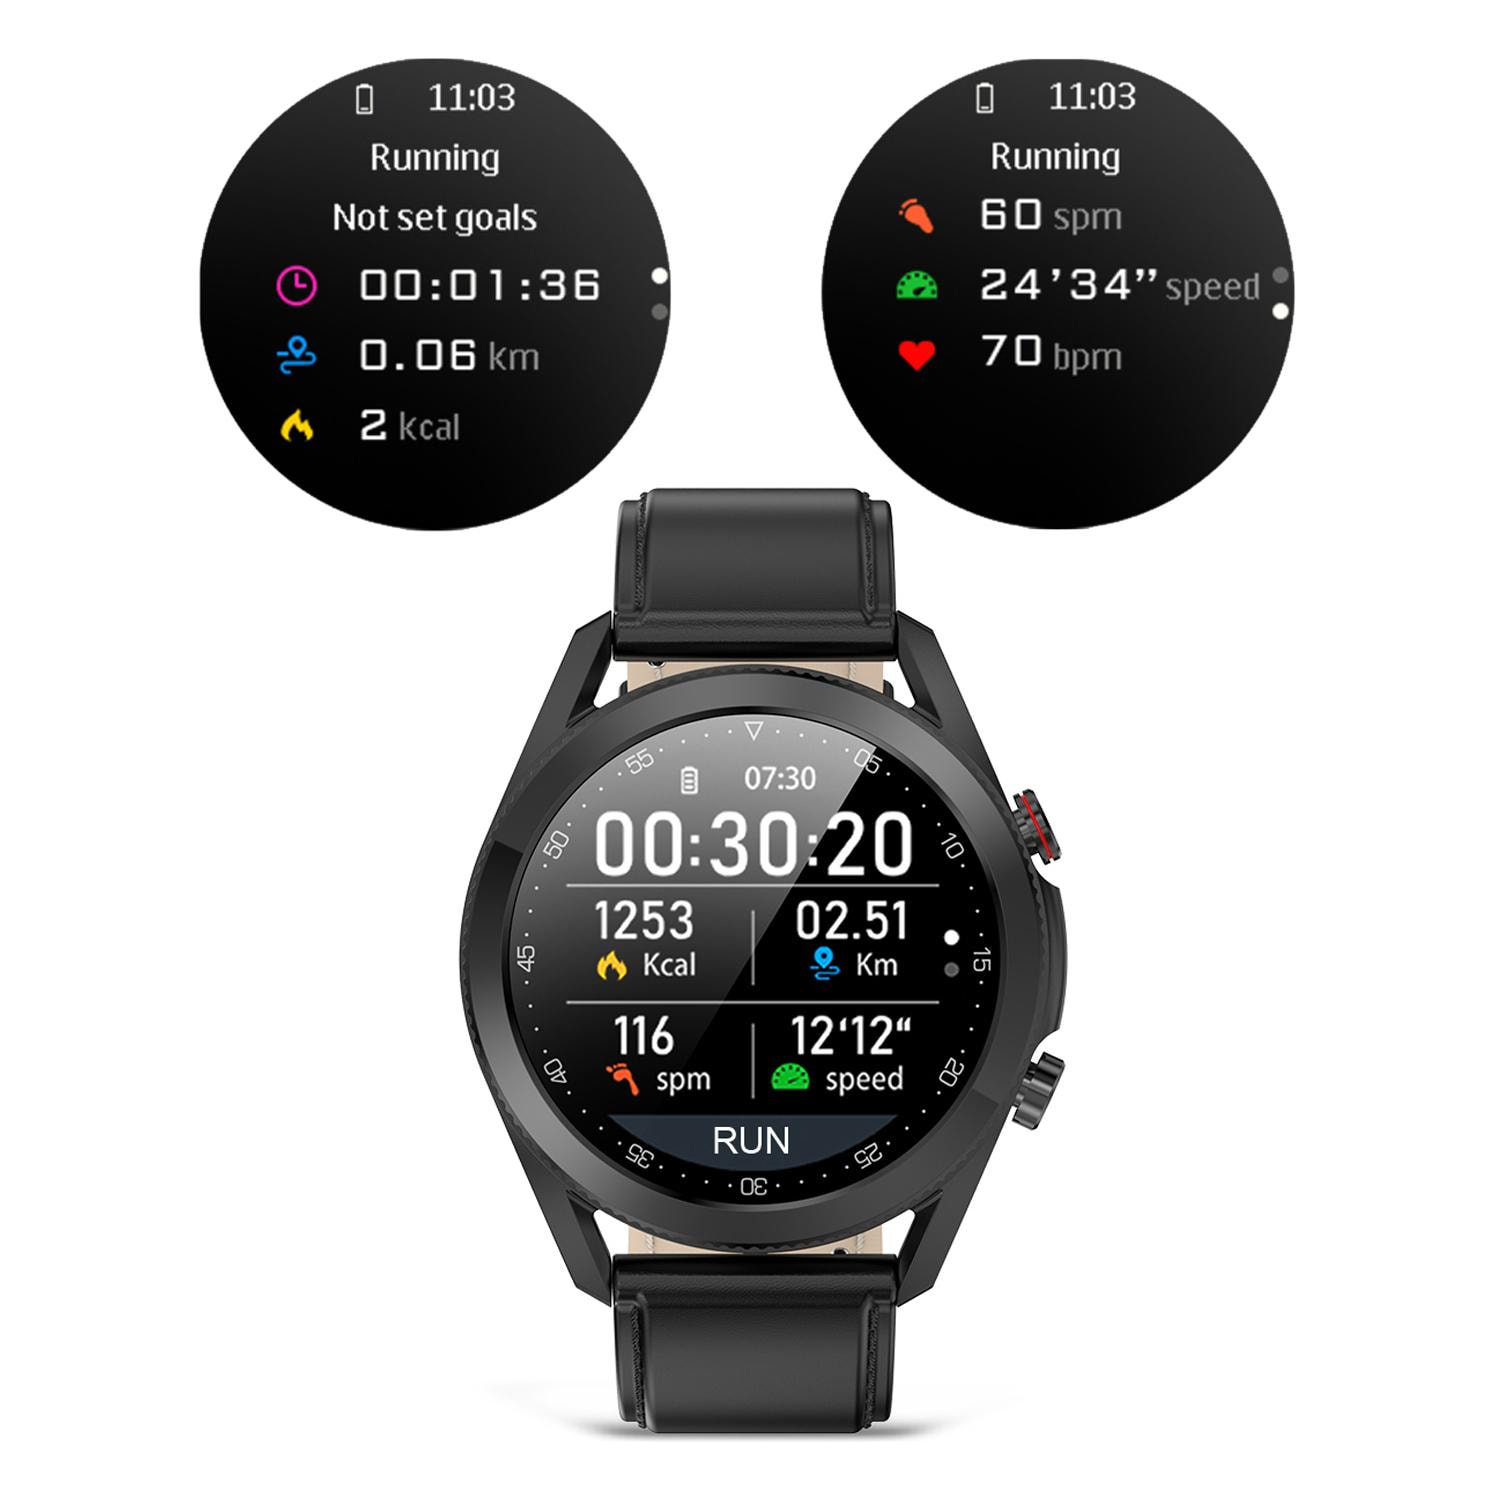 Smartwatch L19 con notificaciones de aplicaciones. Monitor de salud con ECG, monitor de tensión y de oxígeno en sangre. Correa de cuero.